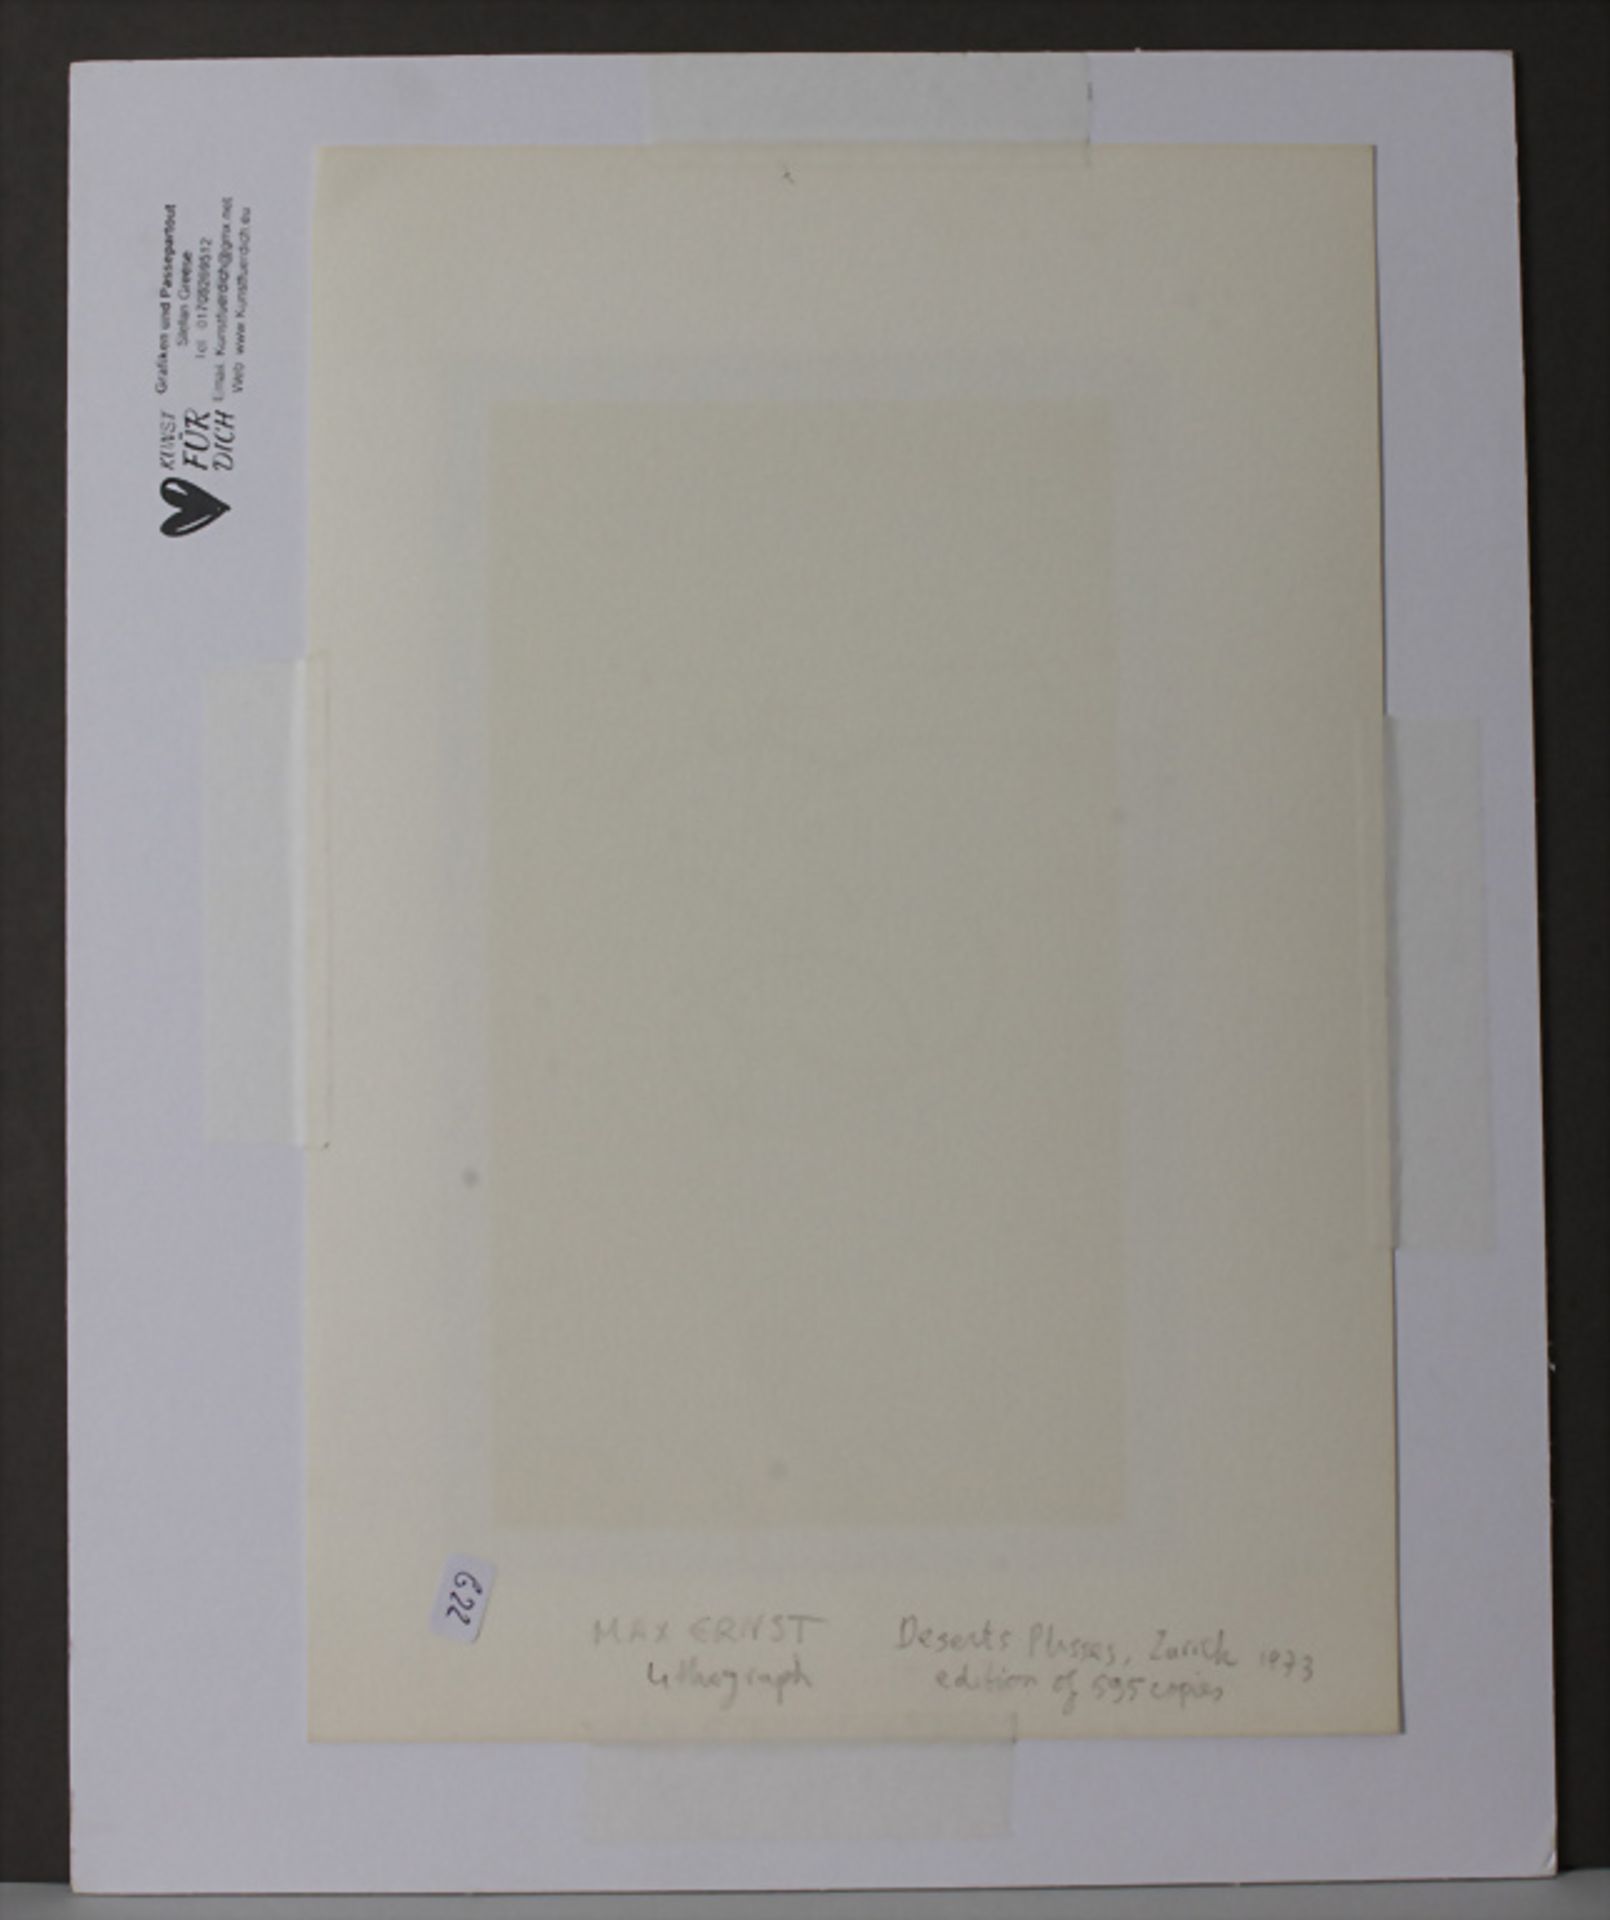 Max Ernst (1891-1976), 'Desert Plisses', Zürich, 1973 - Image 3 of 3